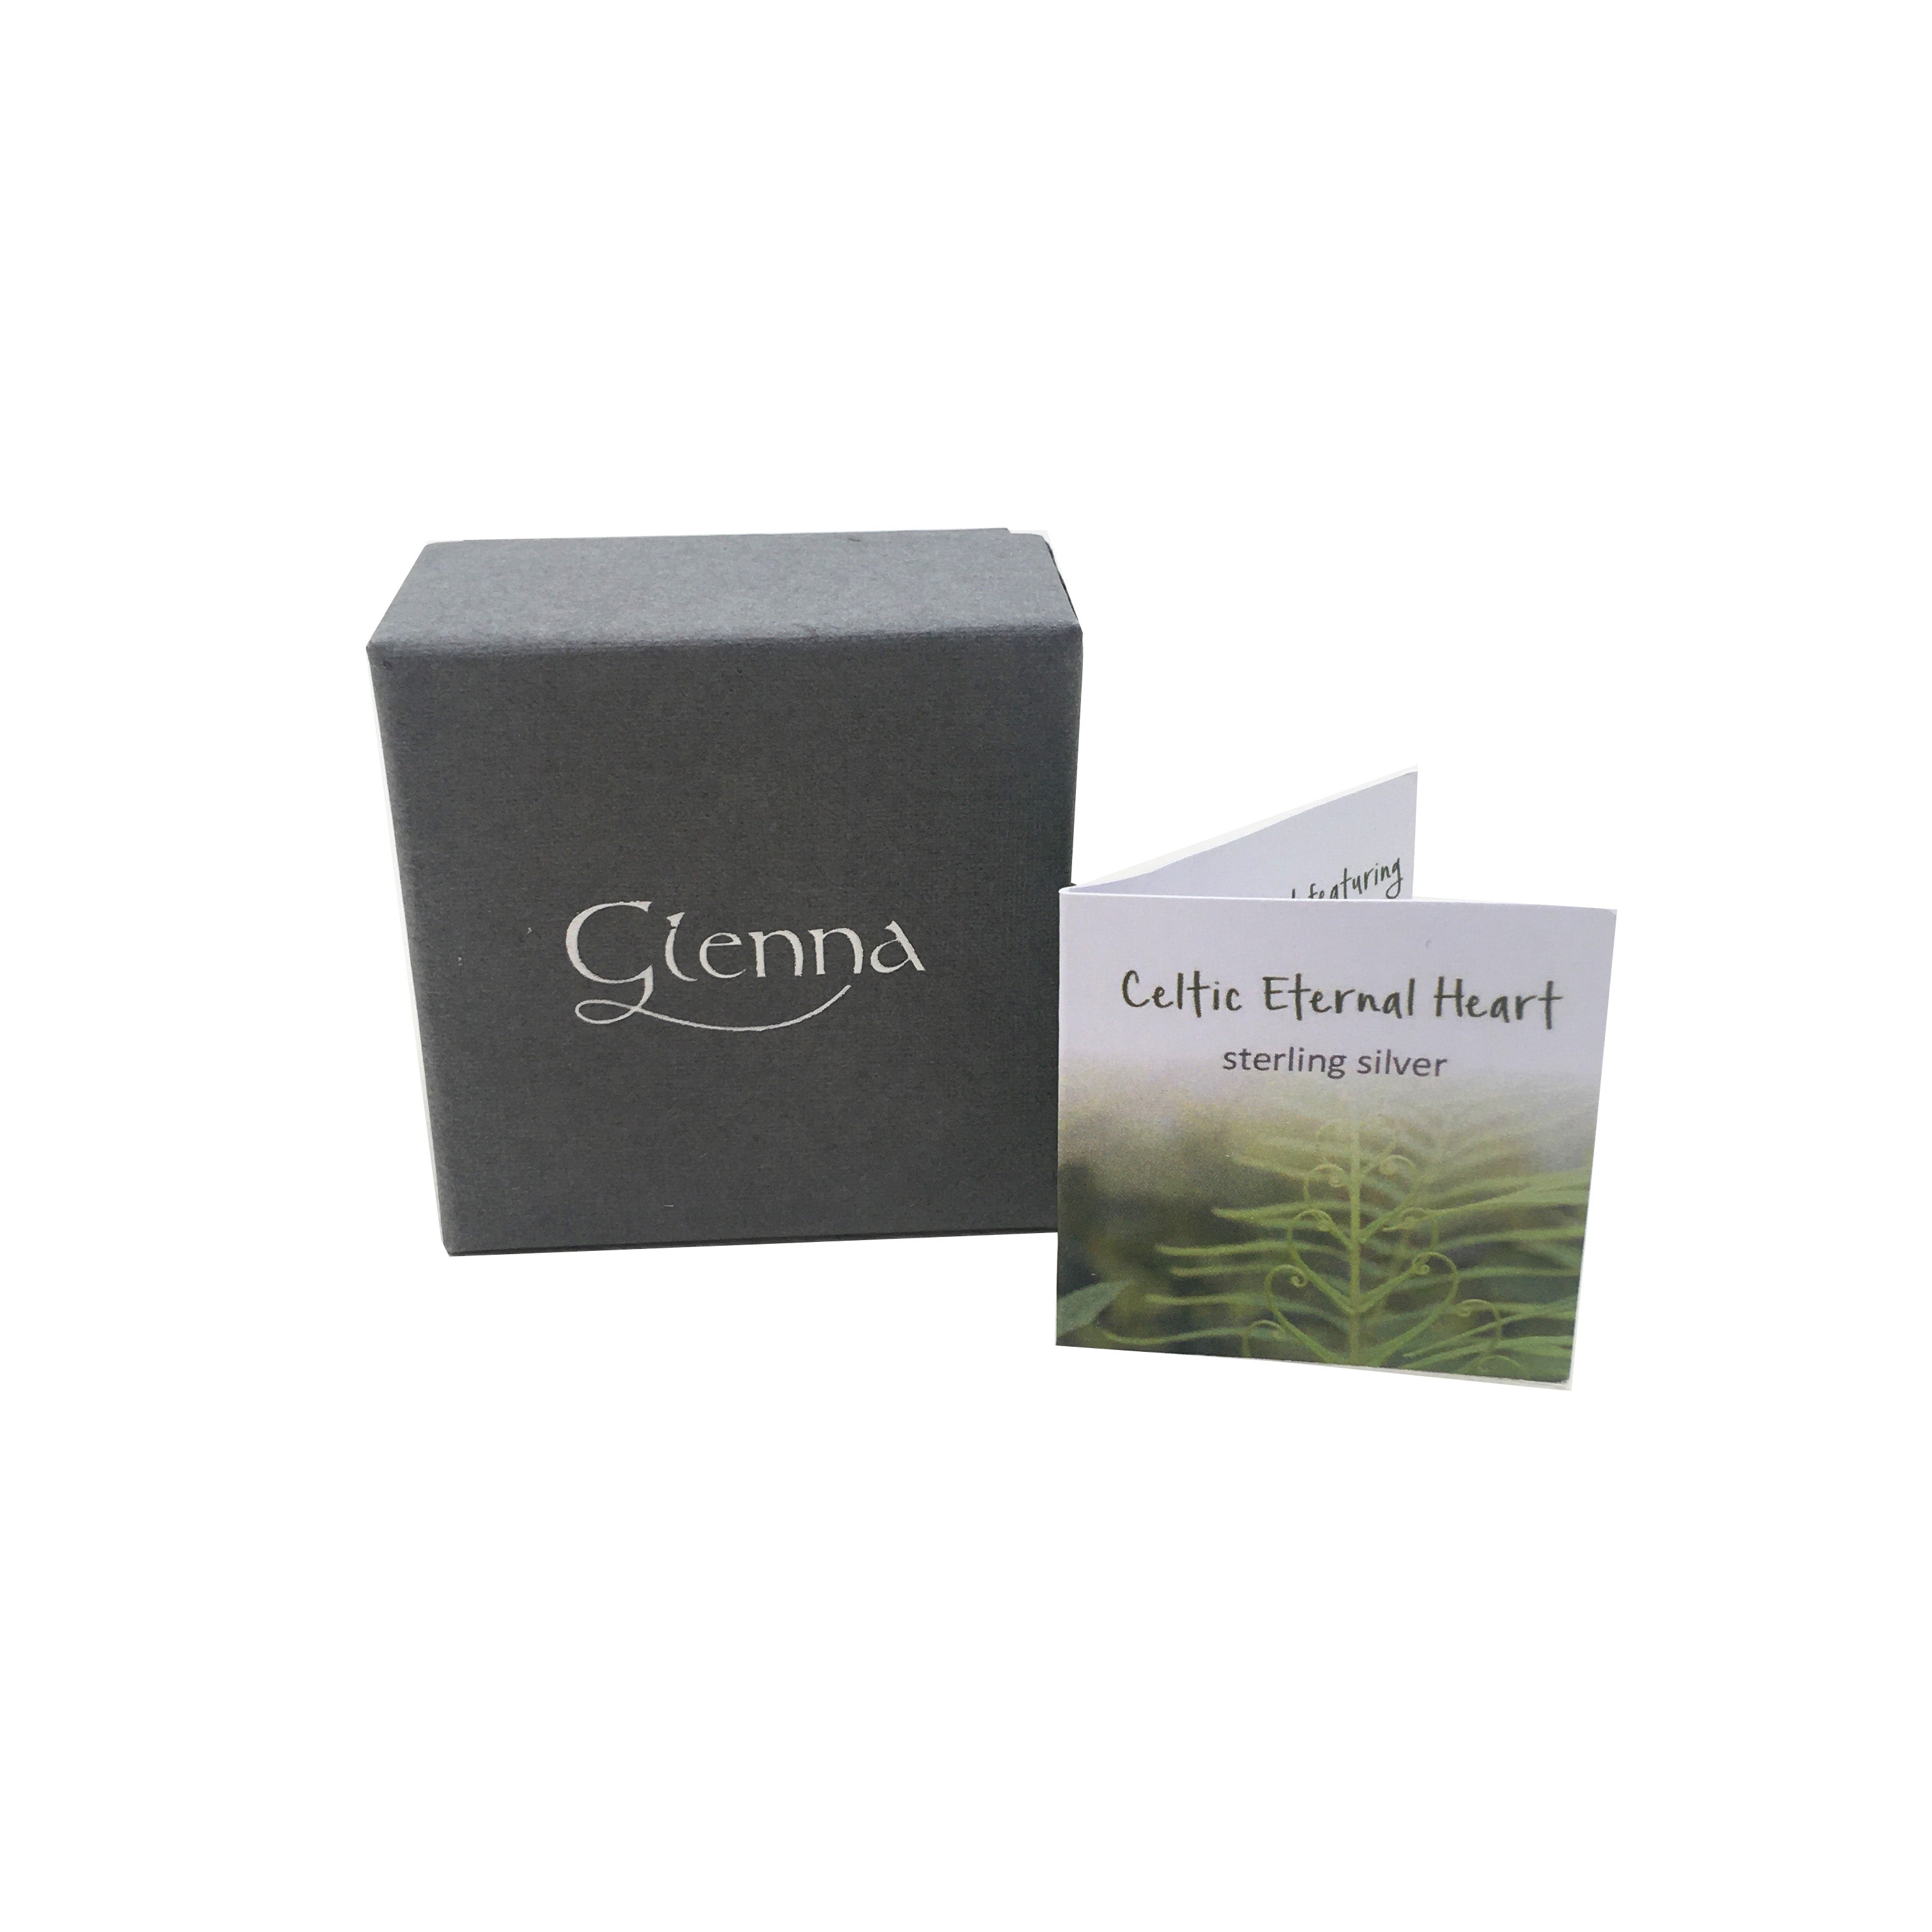 Glenna Celtic Eternal Heart Packaging